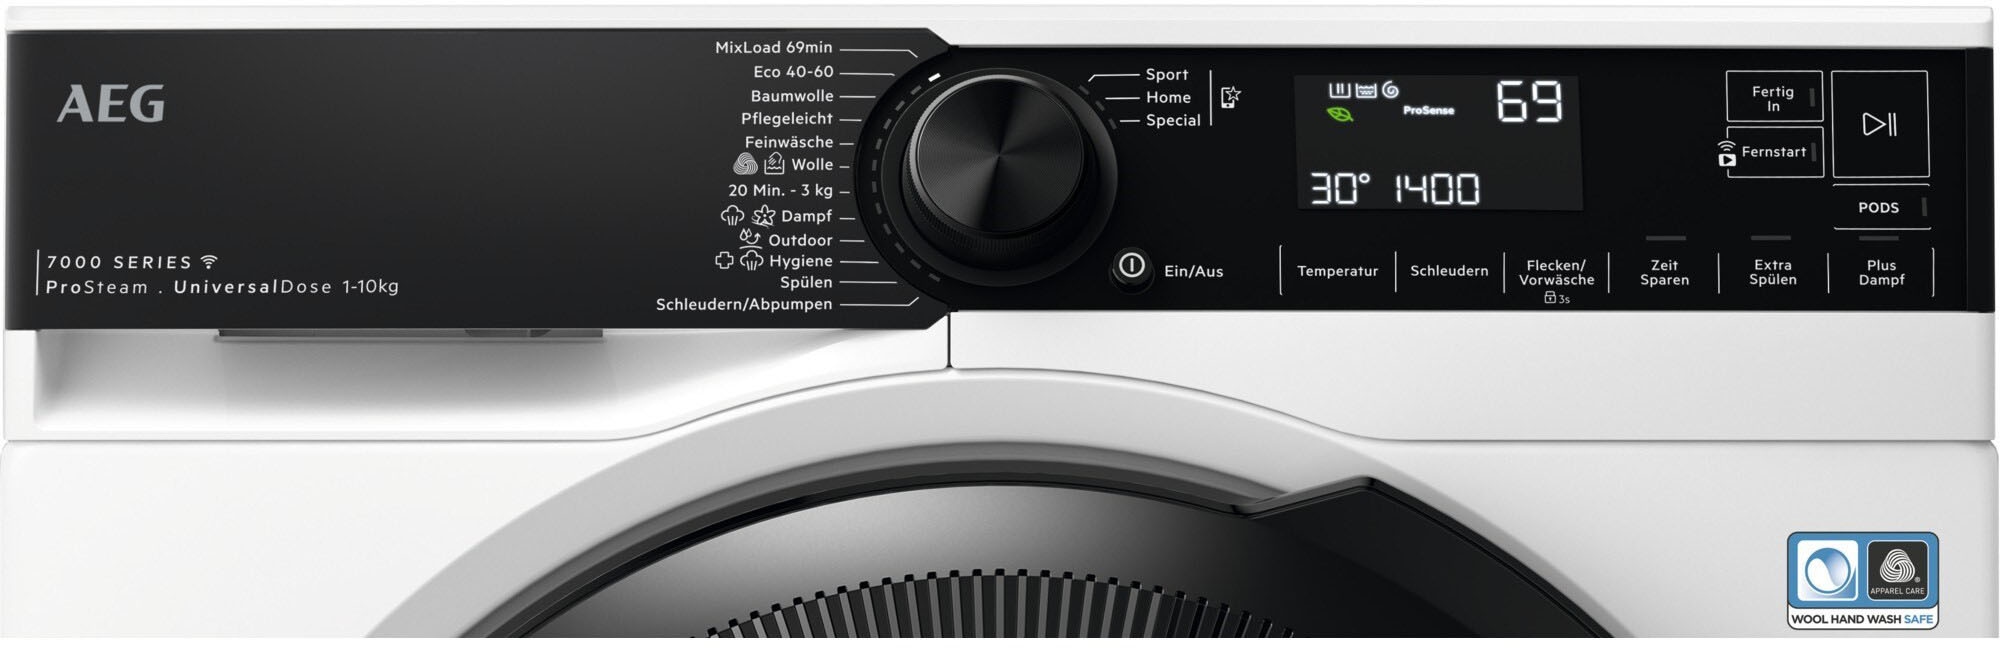 & Waschmaschine, 1400 96 weniger für LR7E75400, kg, U/min, Dampf-Programm - ProSteam bestellen % AEG 10 Wifi online Wasserverbrauch